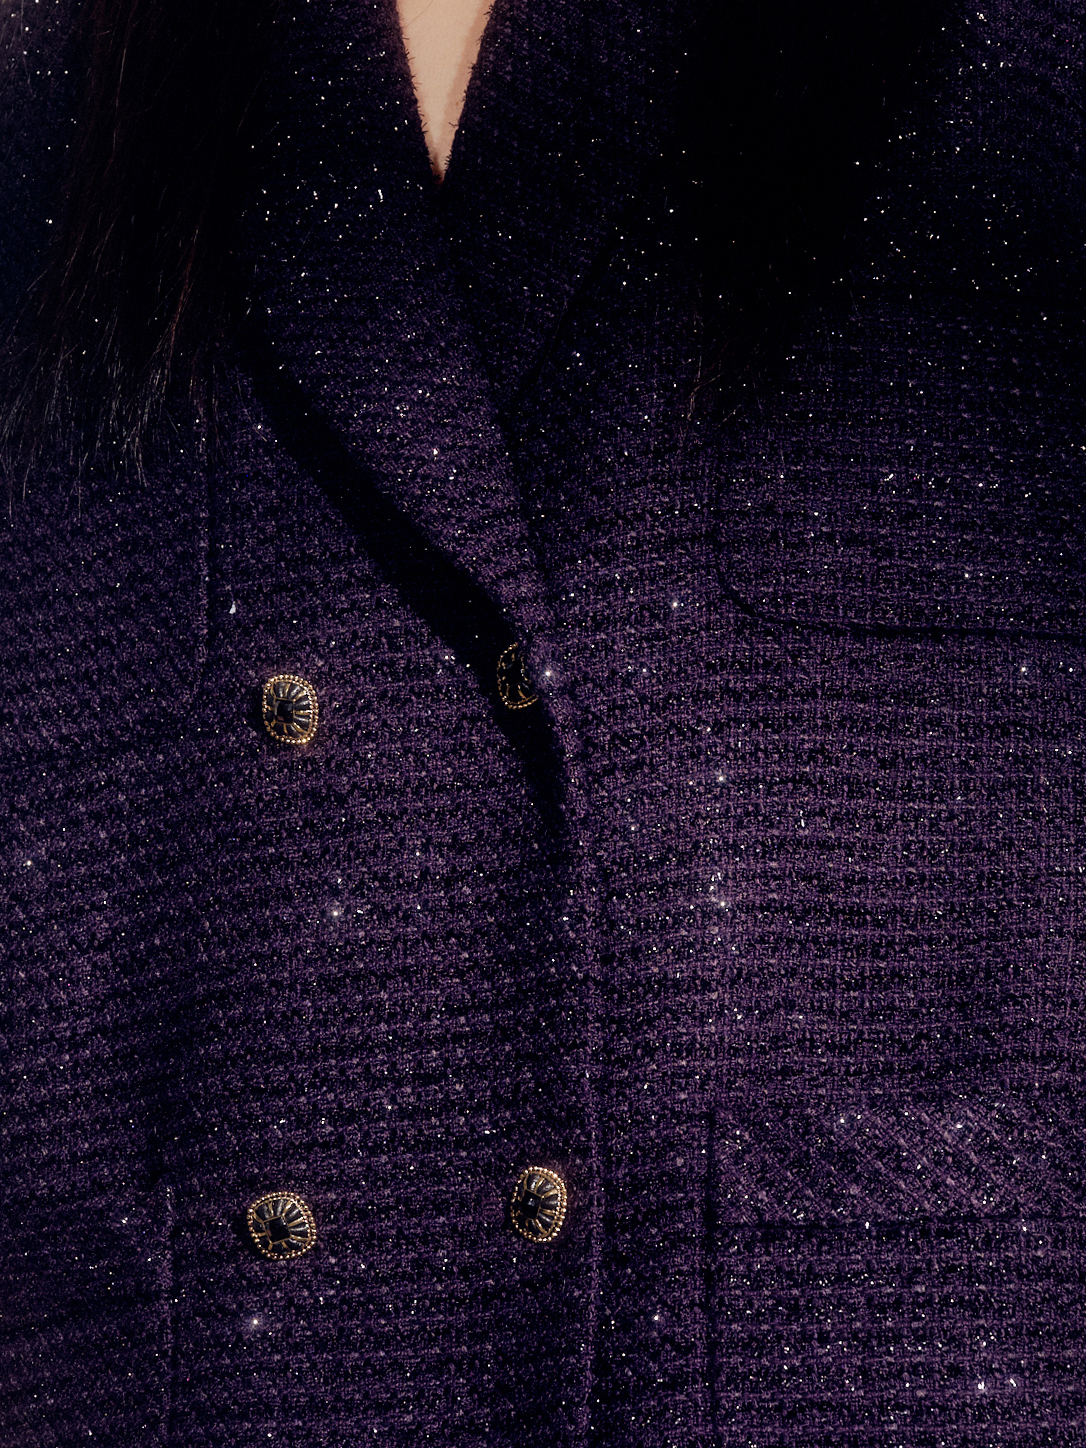 Viana tweed coat